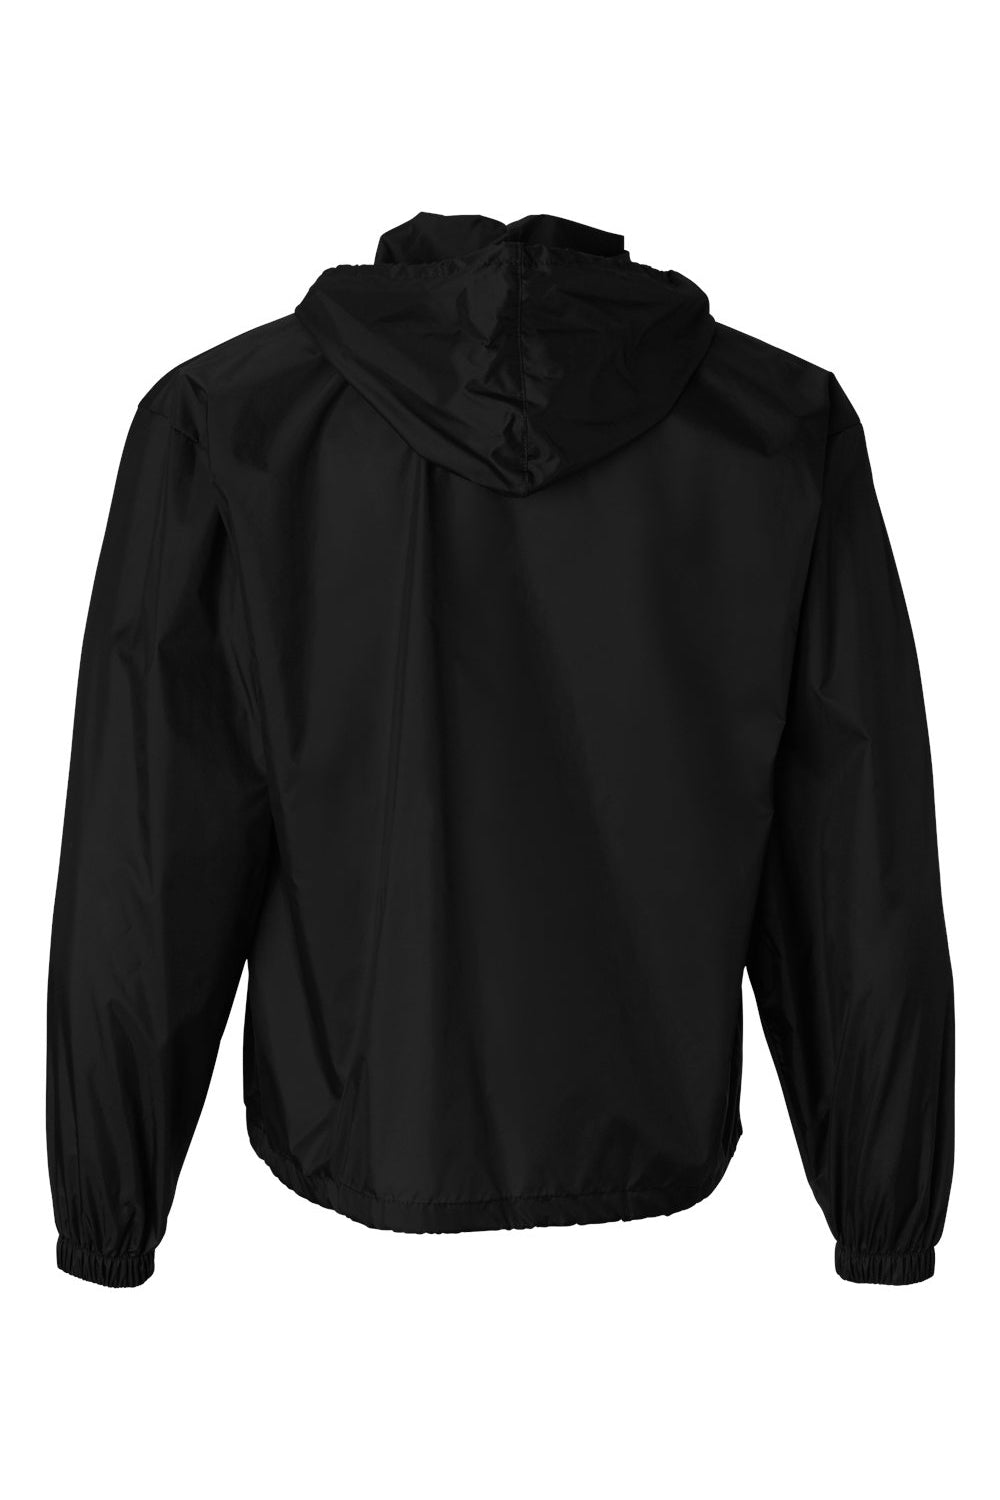 Augusta Sportswear 3130 Mens Water Resistant Packable 1/4 Zip Hooded Jacket Black Flat Back